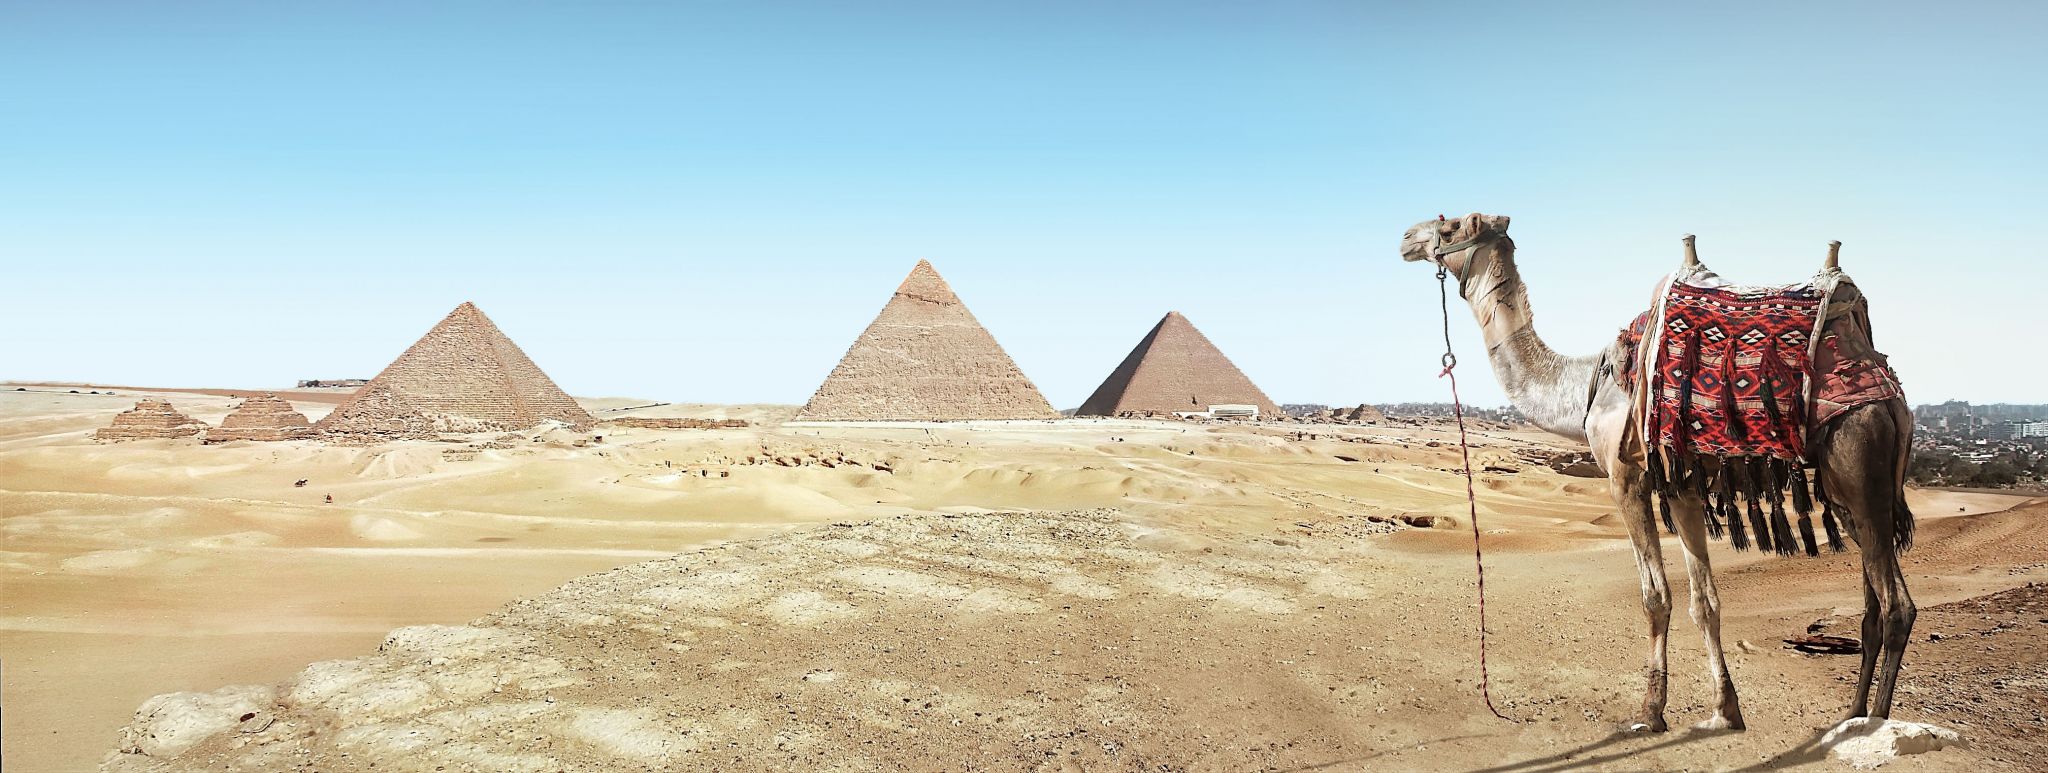 landscape-sand-desert-monument-camel-pyramid-327567-pxhere.com.jpg